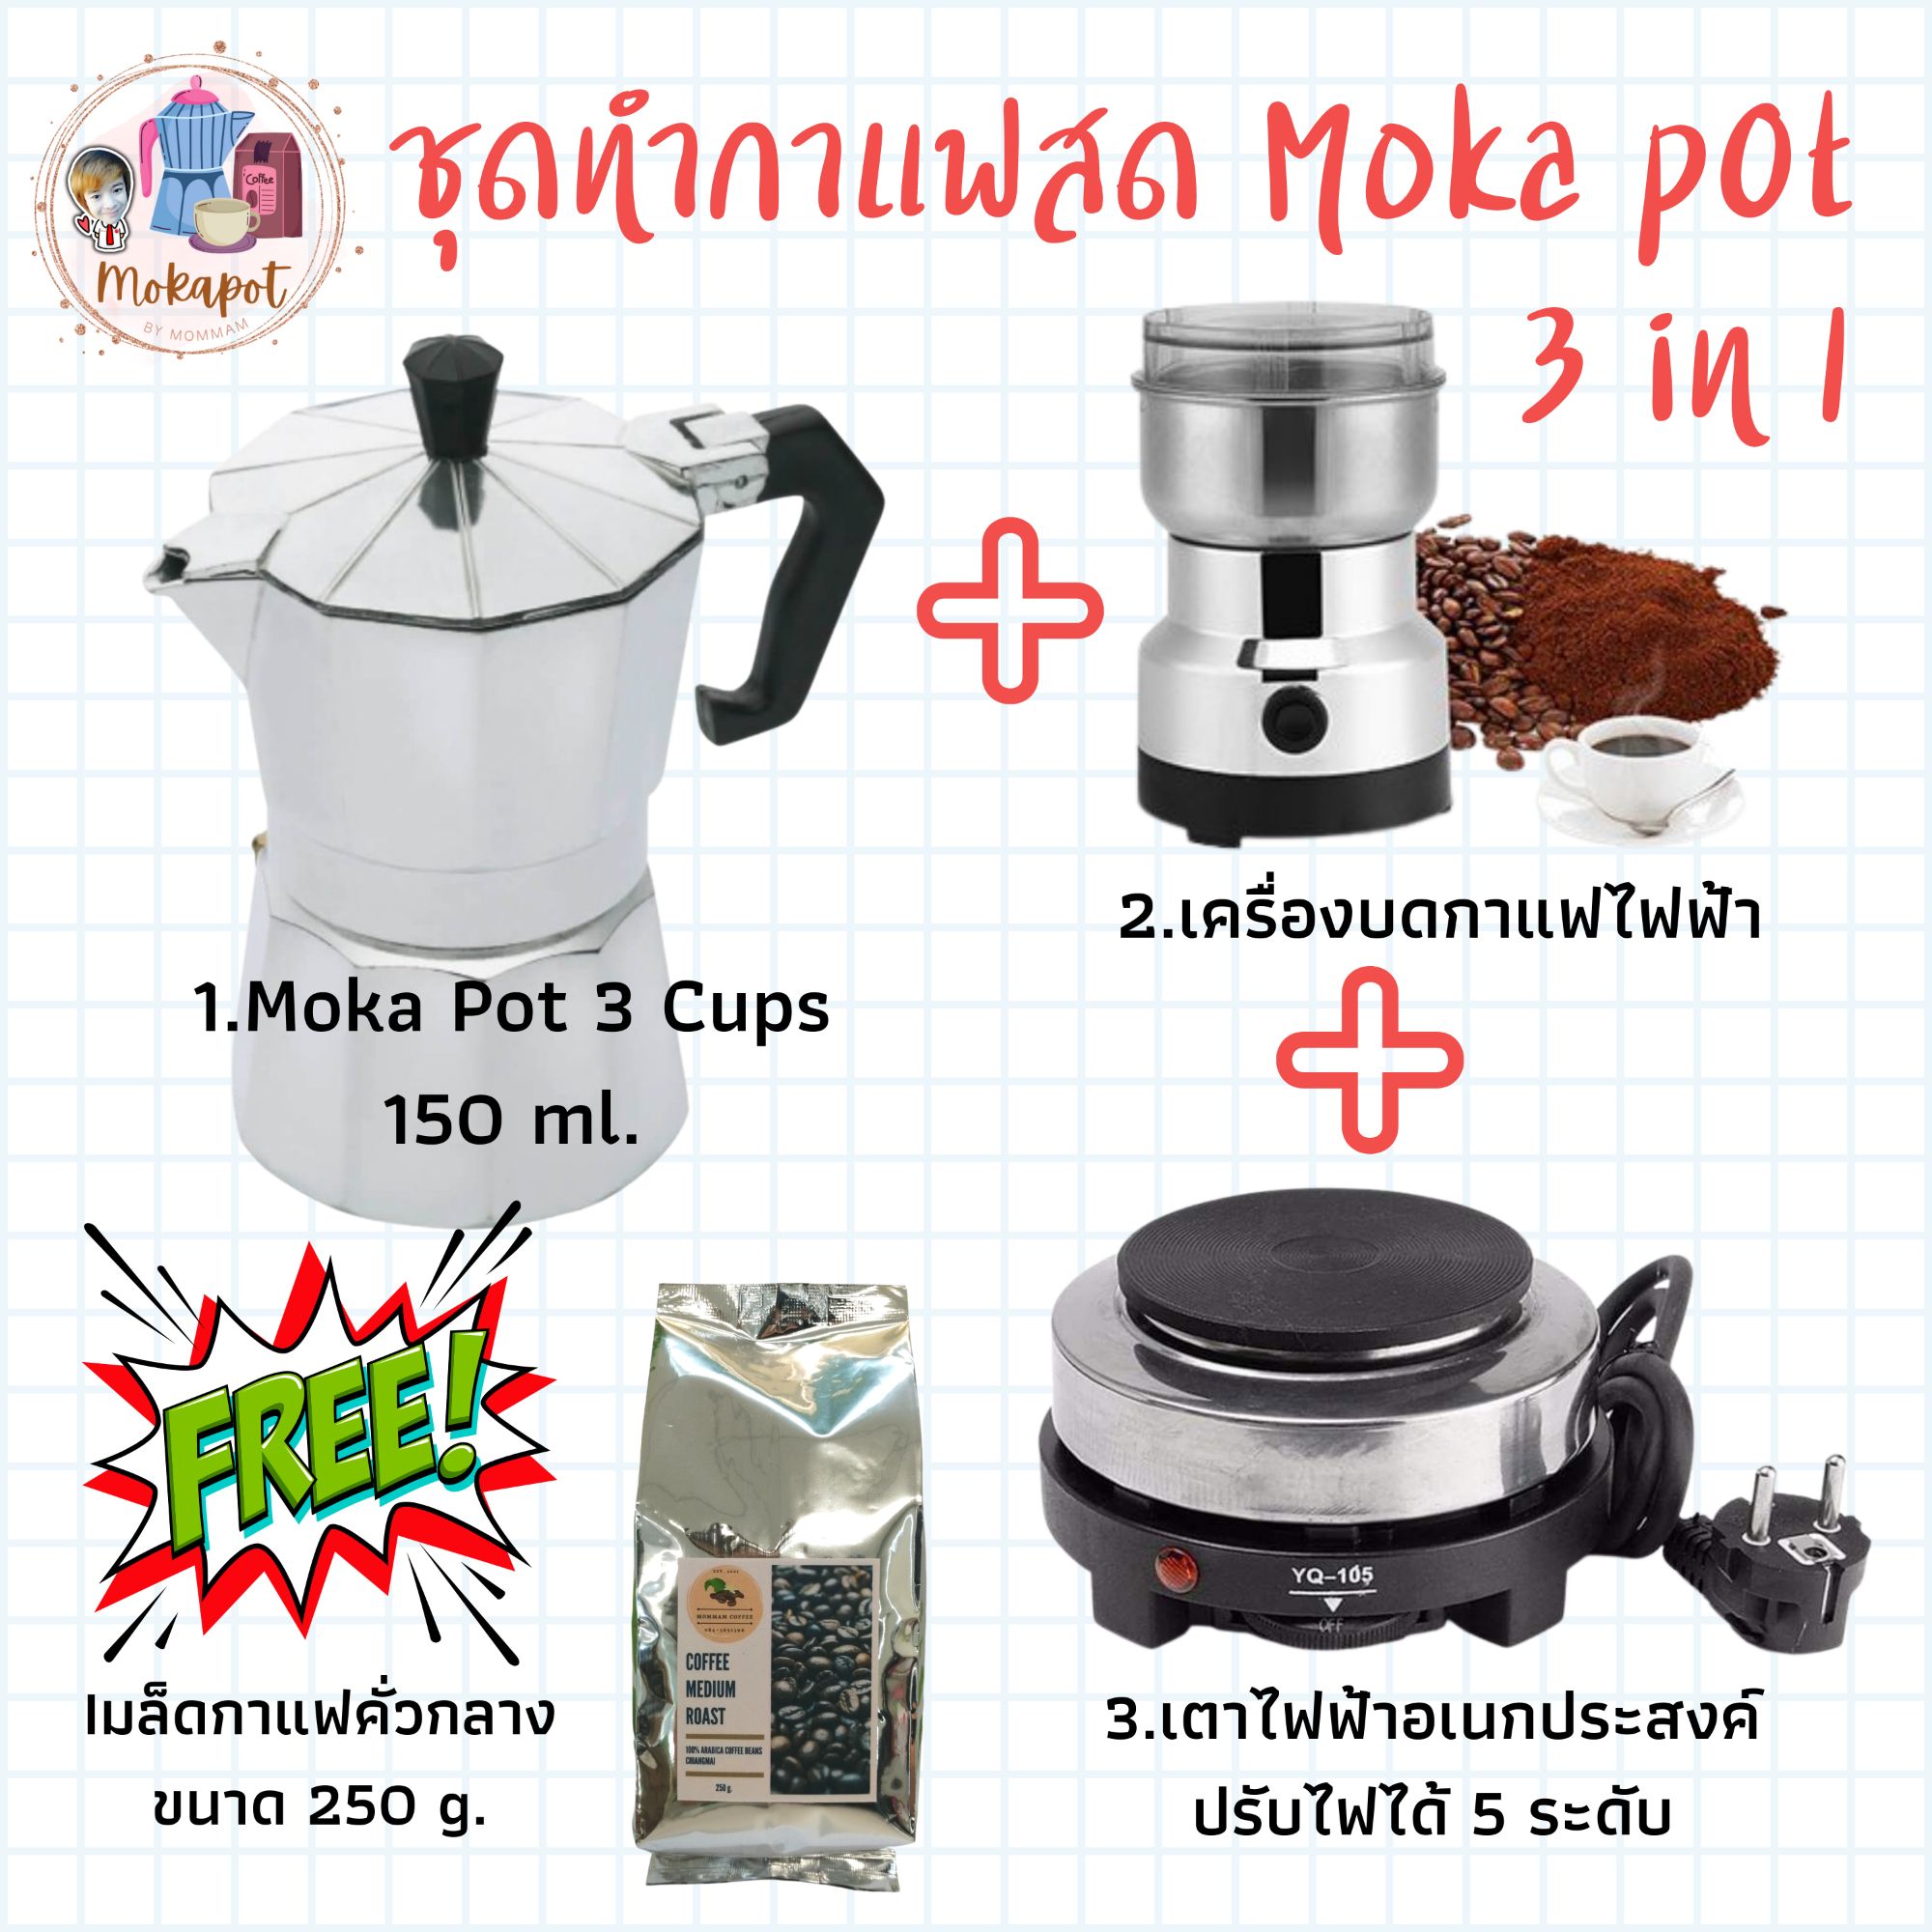 ชุดชงกาแฟสด Mokapot SET E ,กาต้มกาแฟ 3 cups 150 ml. + เครื่องบดกาแฟไฟฟ้า + เตาไฟฟ้า ปรับความร้อนได้ 5 ระดับ 💥แถมฟรี💥 กาแฟคั่ว 250g.